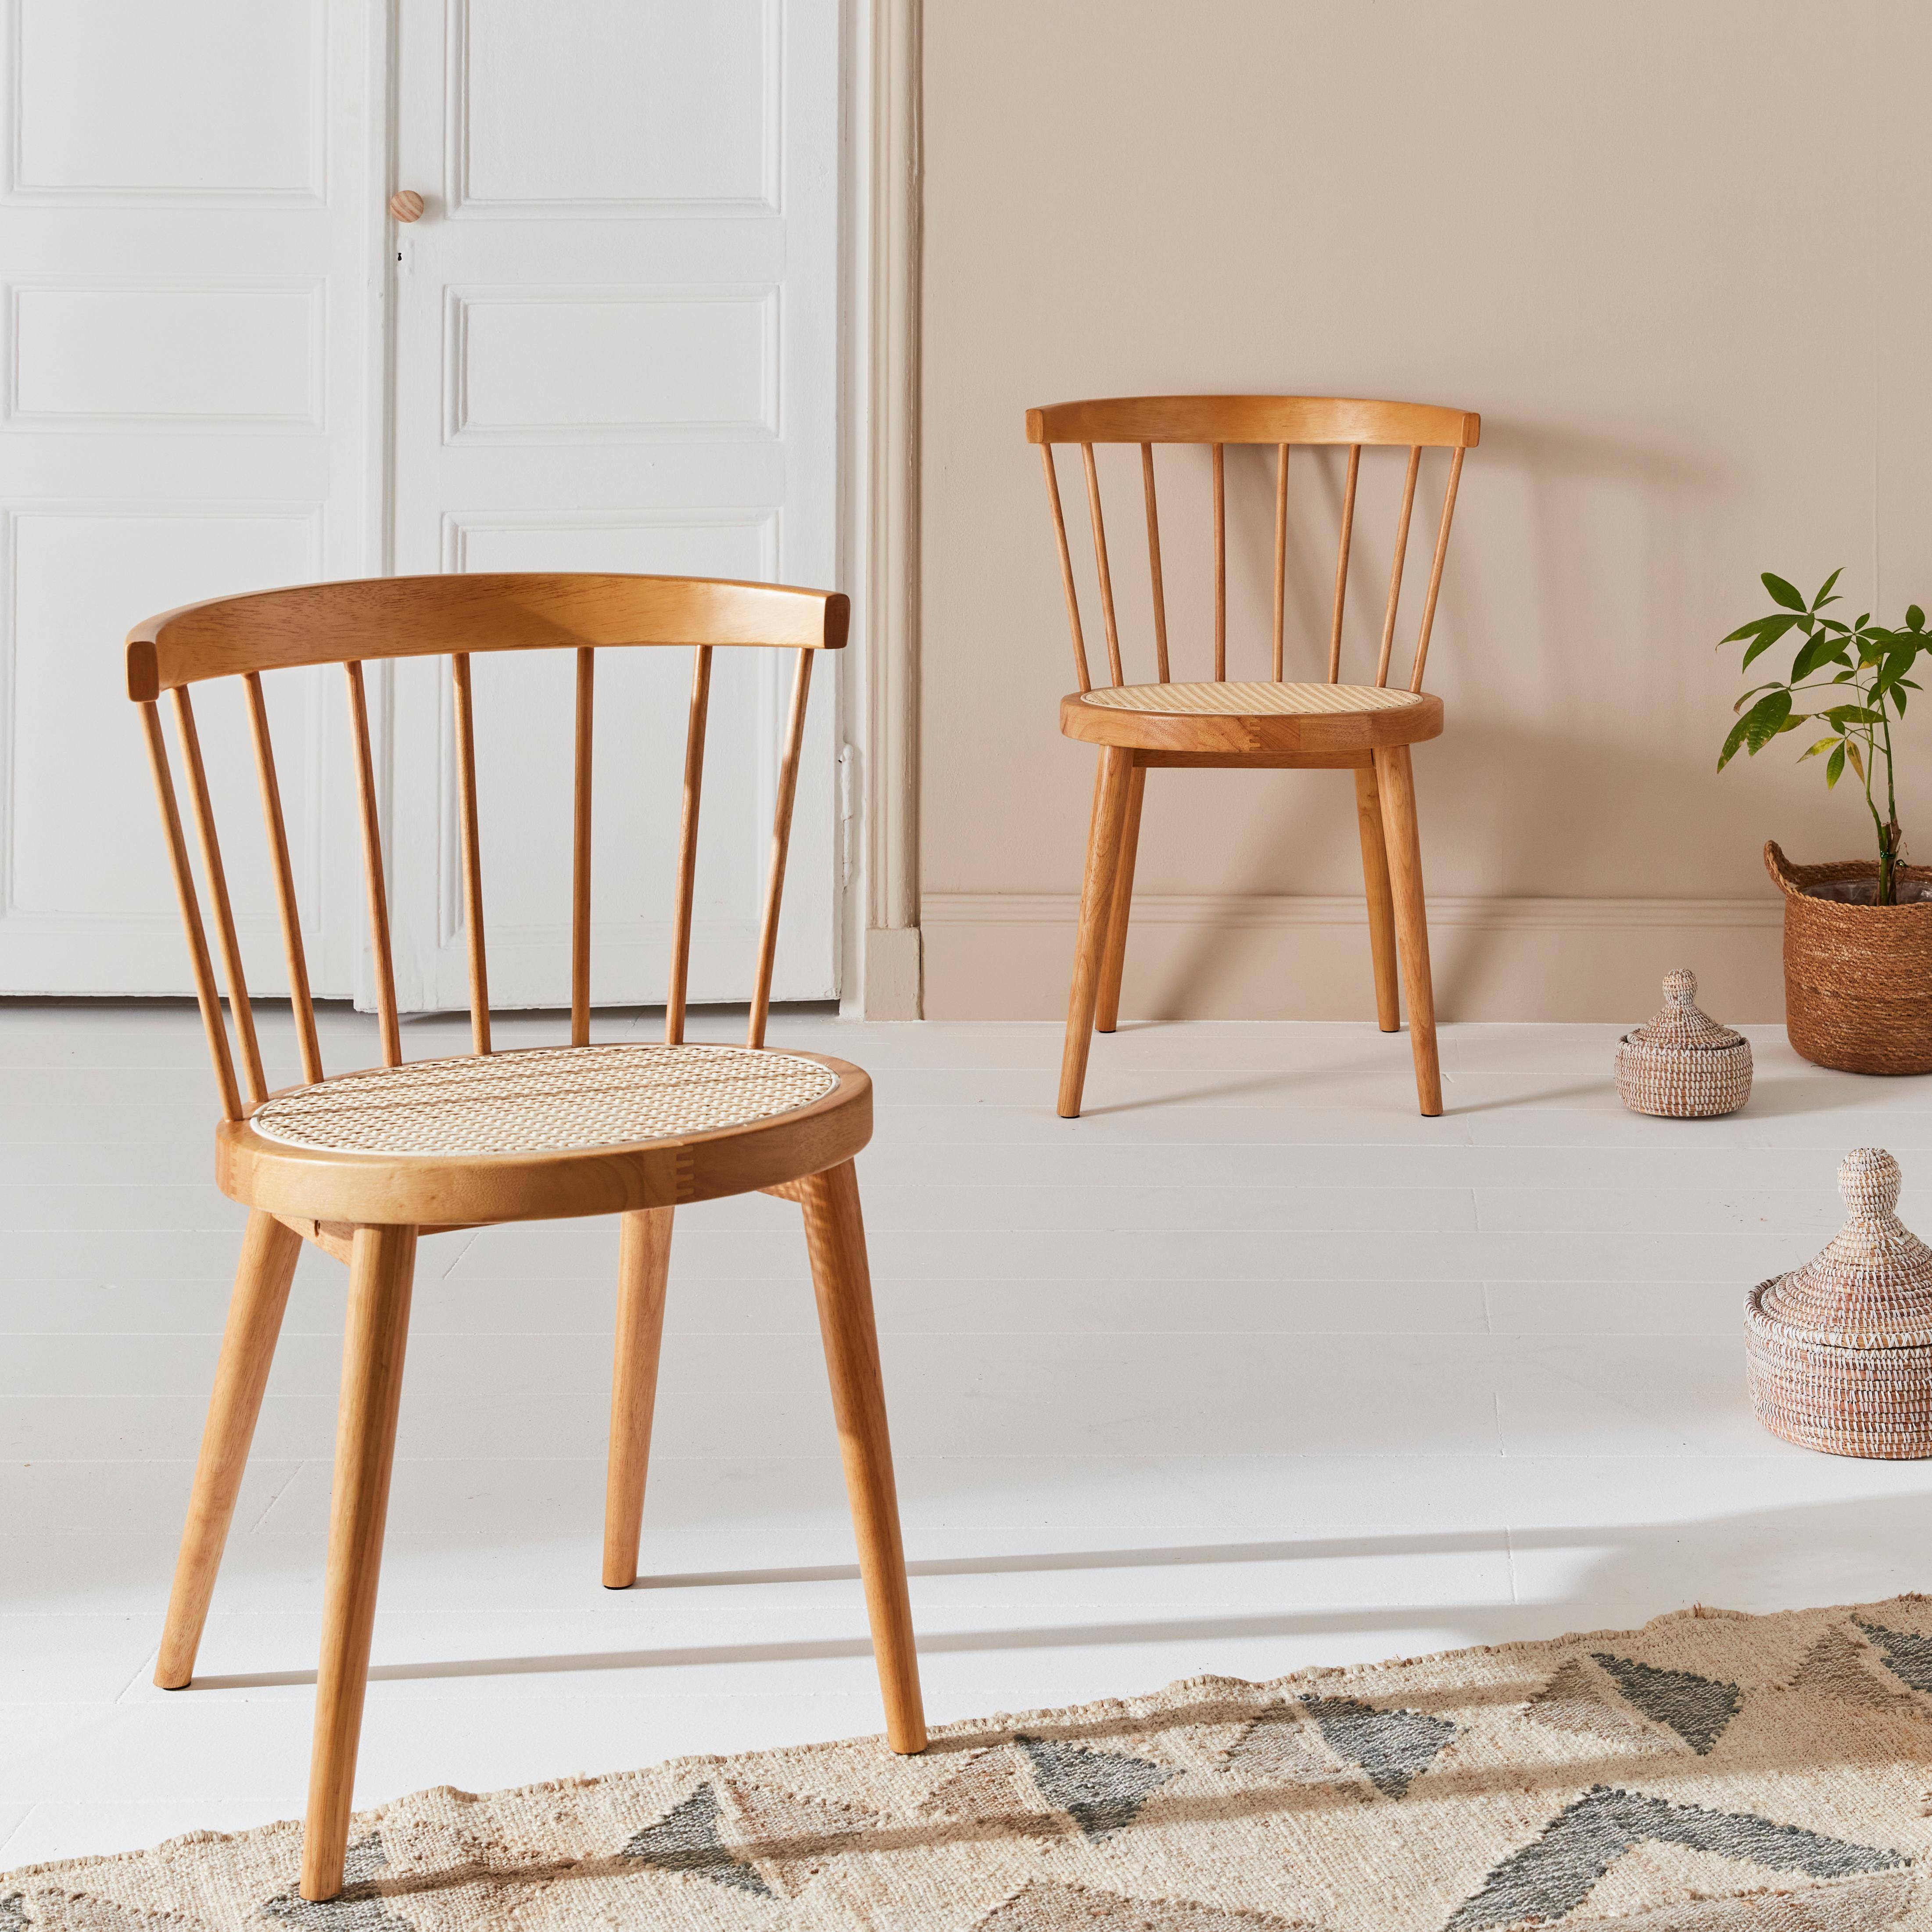 Set di 2 sedie in legno naturale e canna, Nora, L 54 x P 54 x H 76,5 cm. Photo1